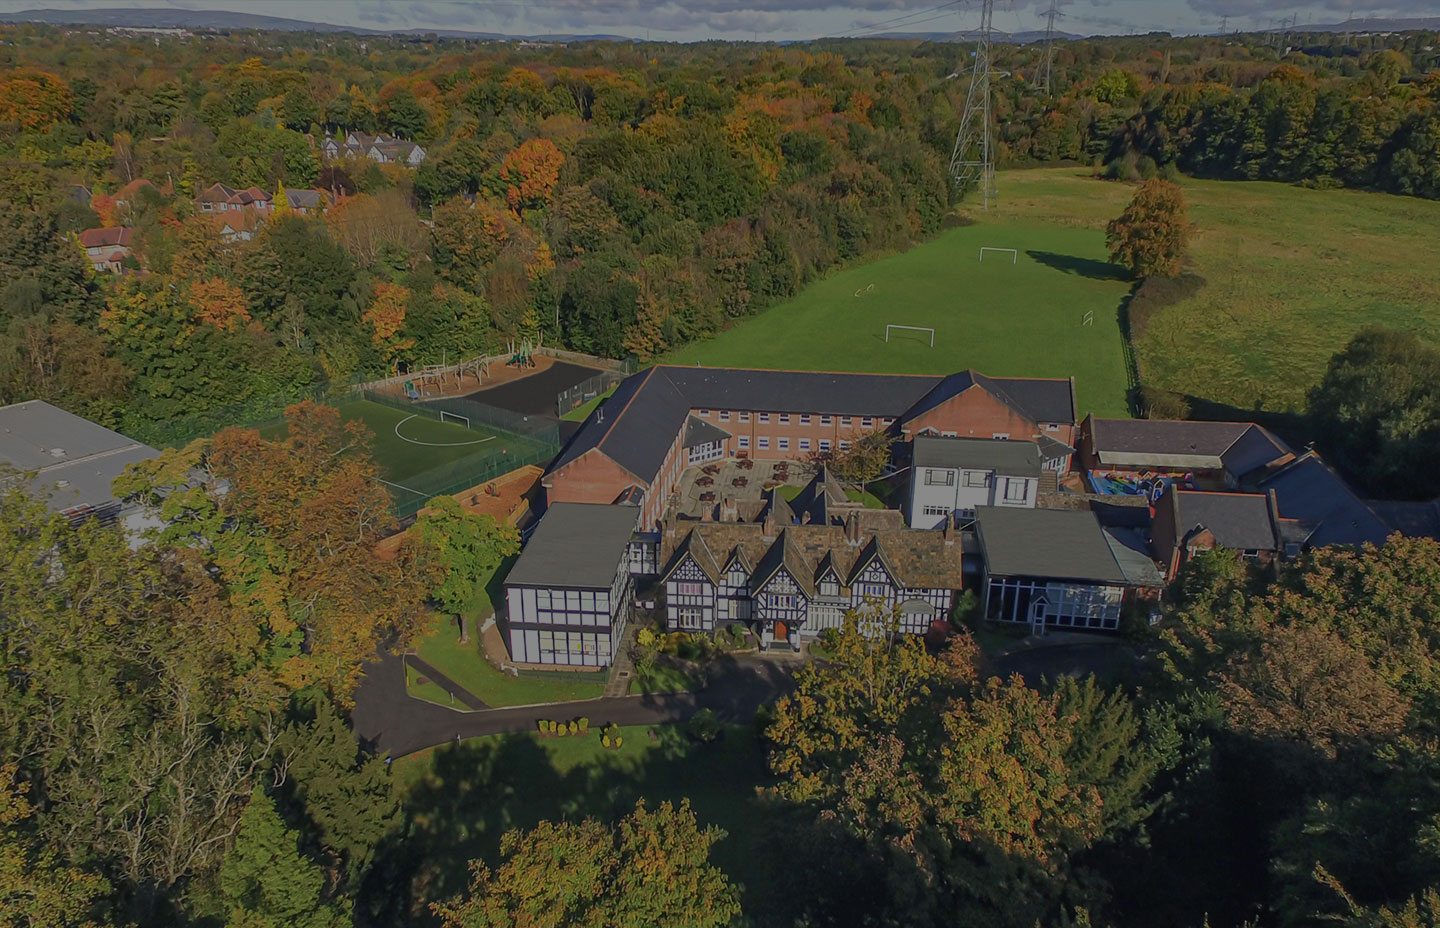 Bridgewater-School-aerial-image - Bridgewater School